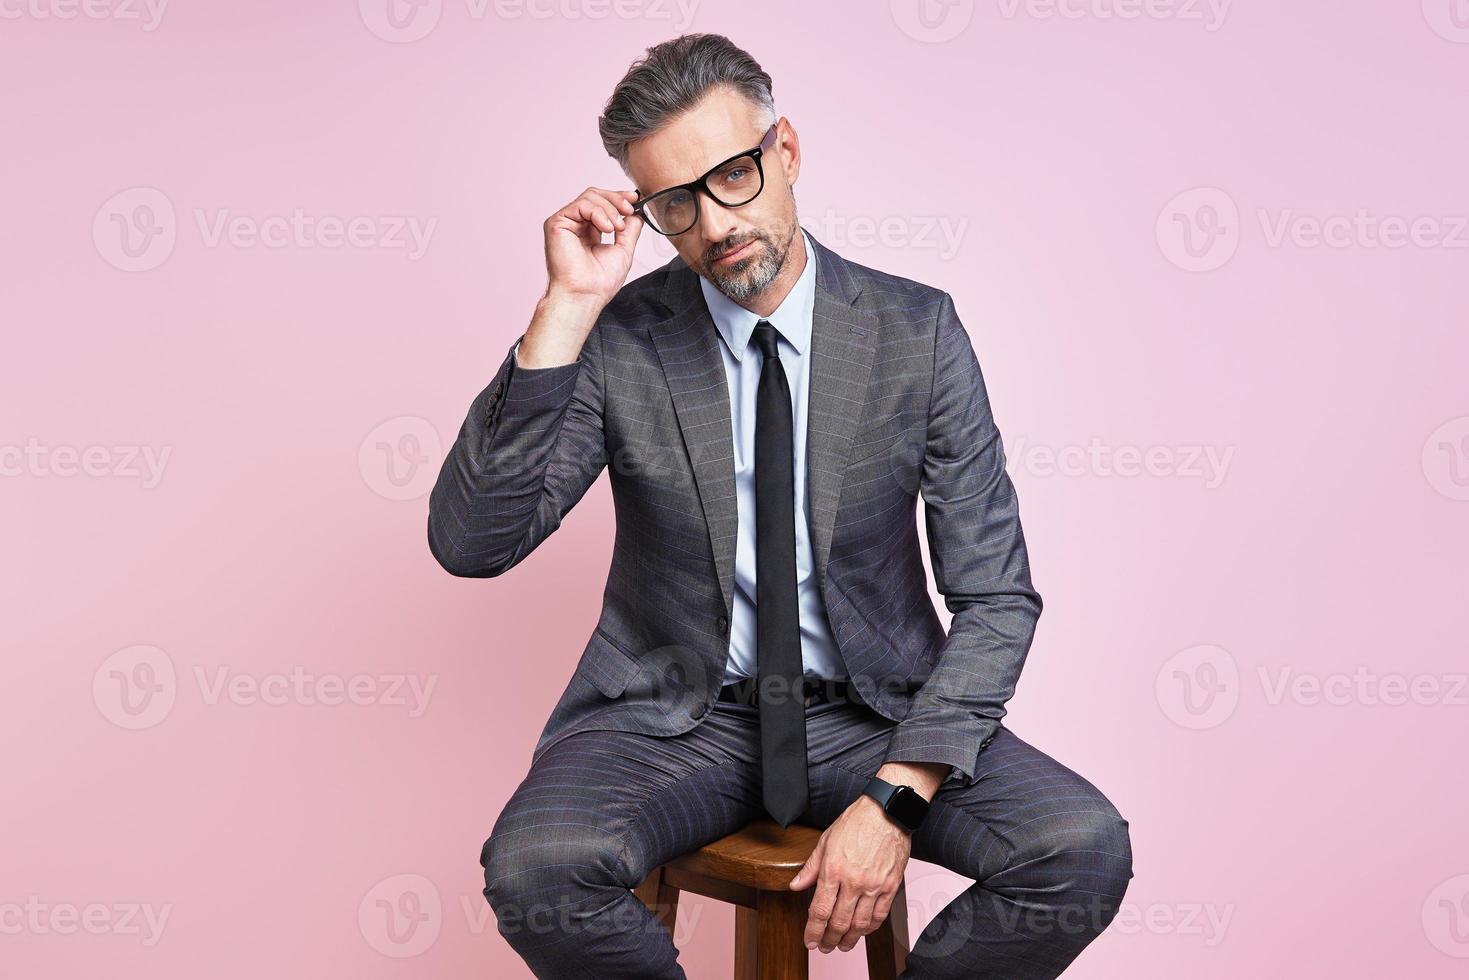 homem maduro bonito em trajes formais, ajustando os óculos enquanto está sentado contra um fundo rosa foto